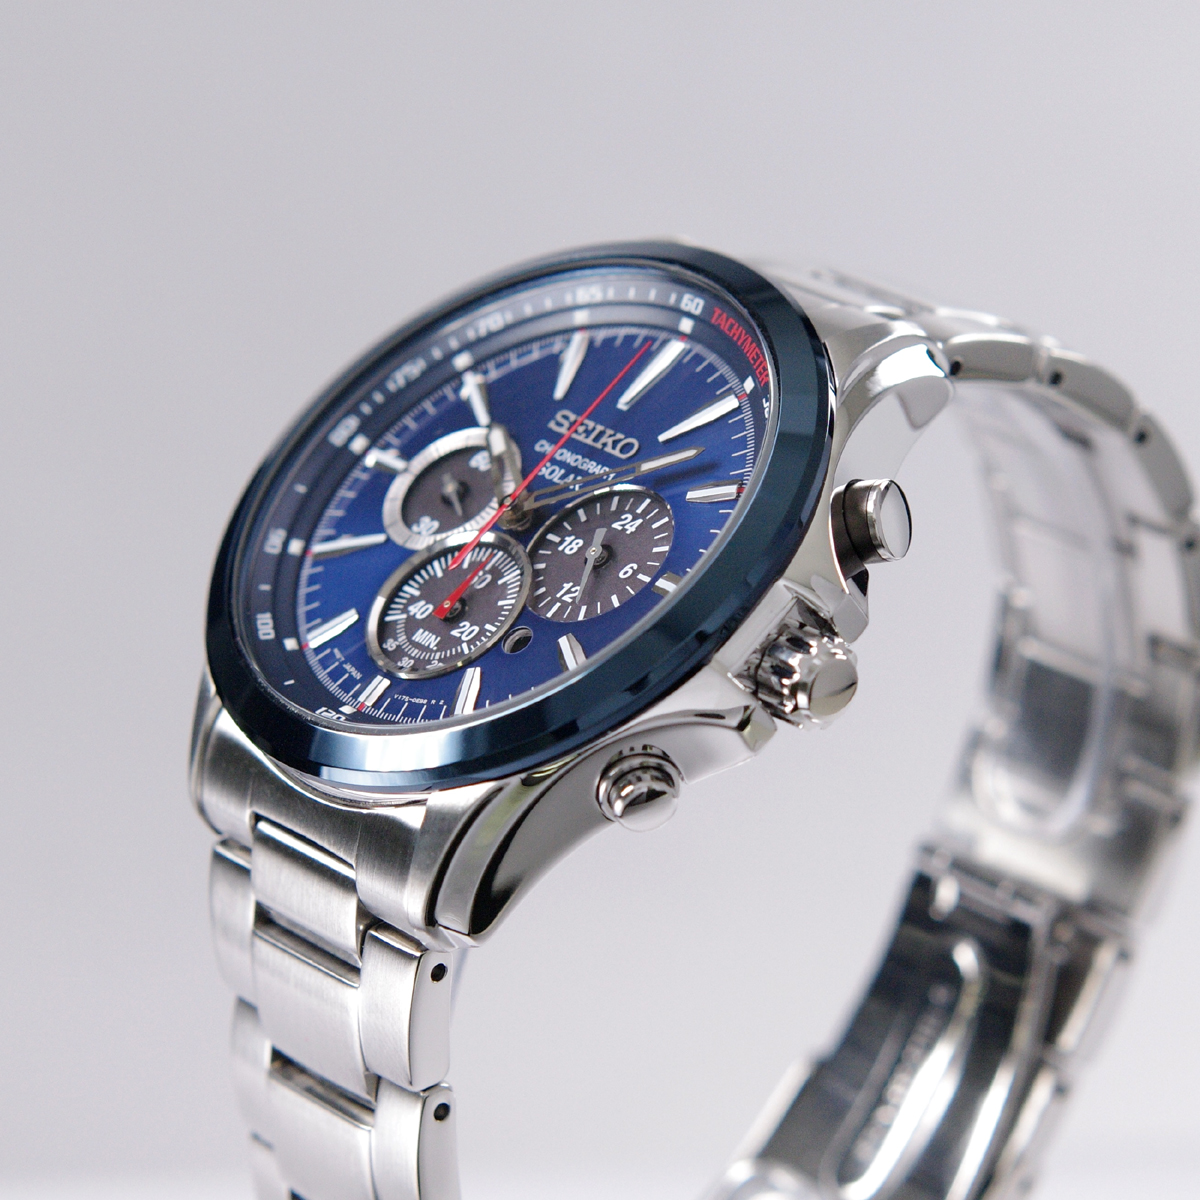 【楽天市場】セイコー SEIKO 腕時計 ソーラー クロノグラフ 100M防水 日本製ムーブメント 海外モデル "ネイビーxシルバー